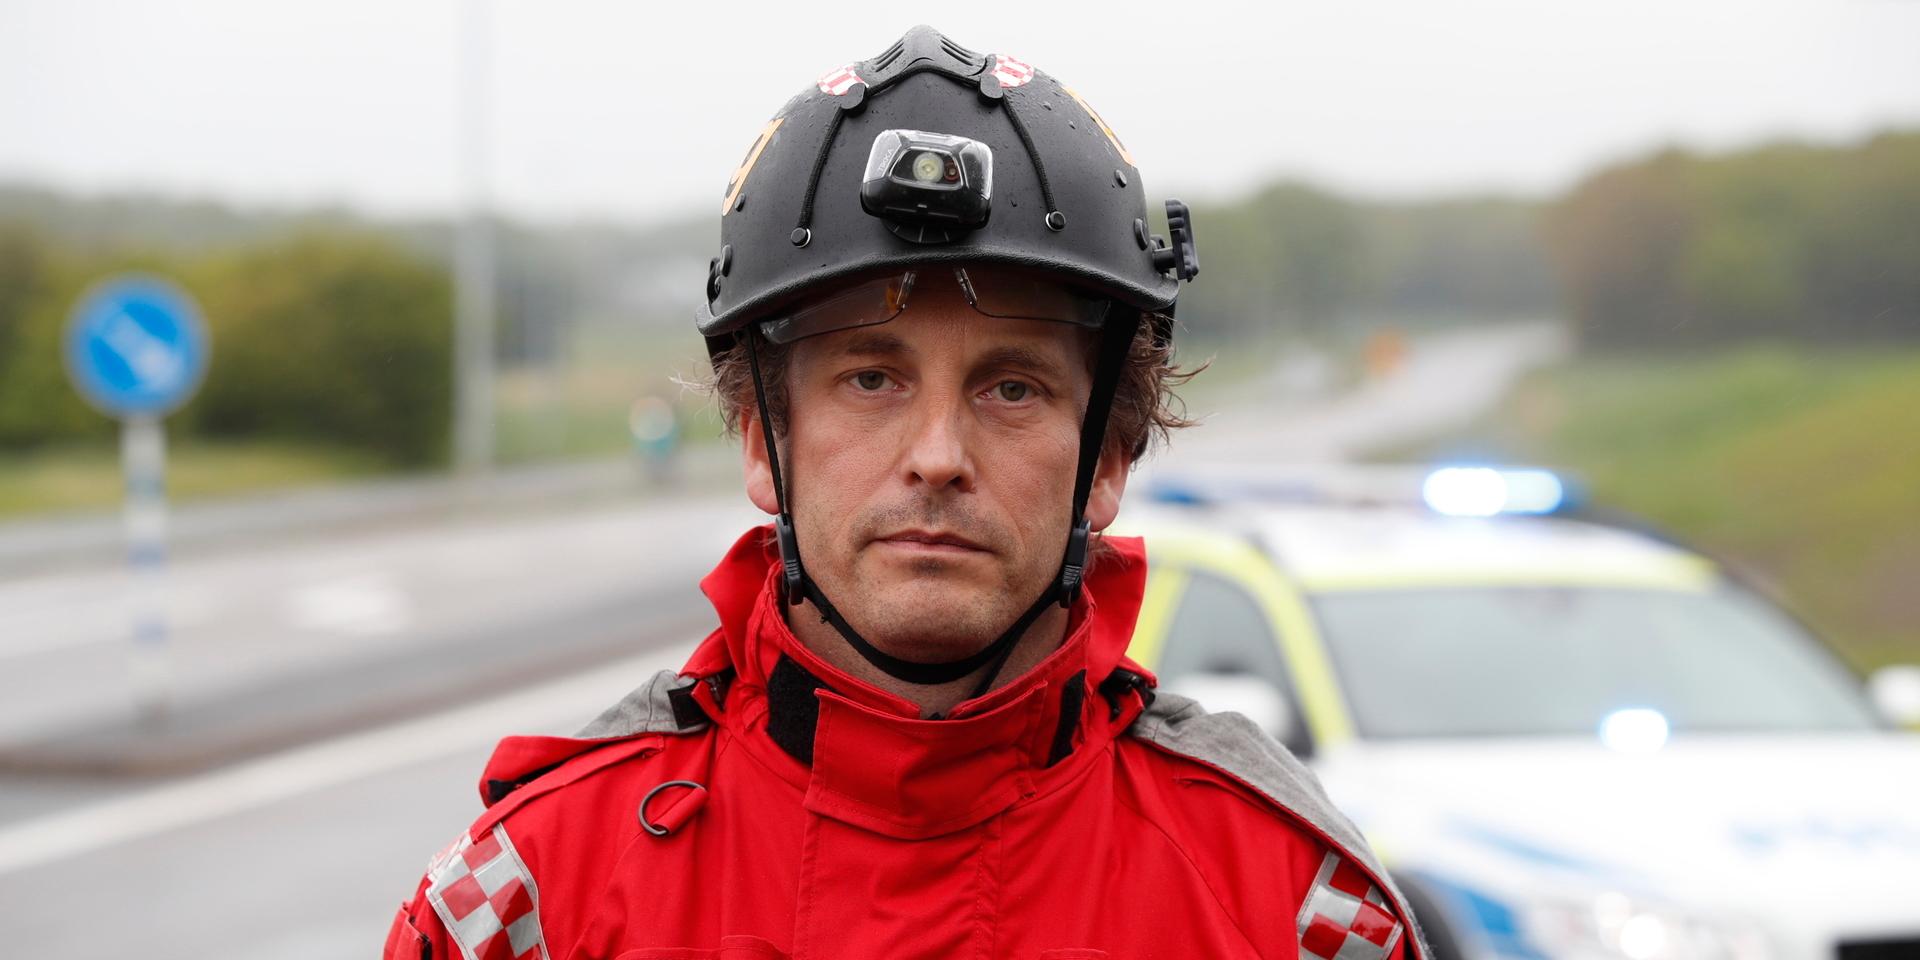 Daniel Gillesèn är vakthavande räddningchef.